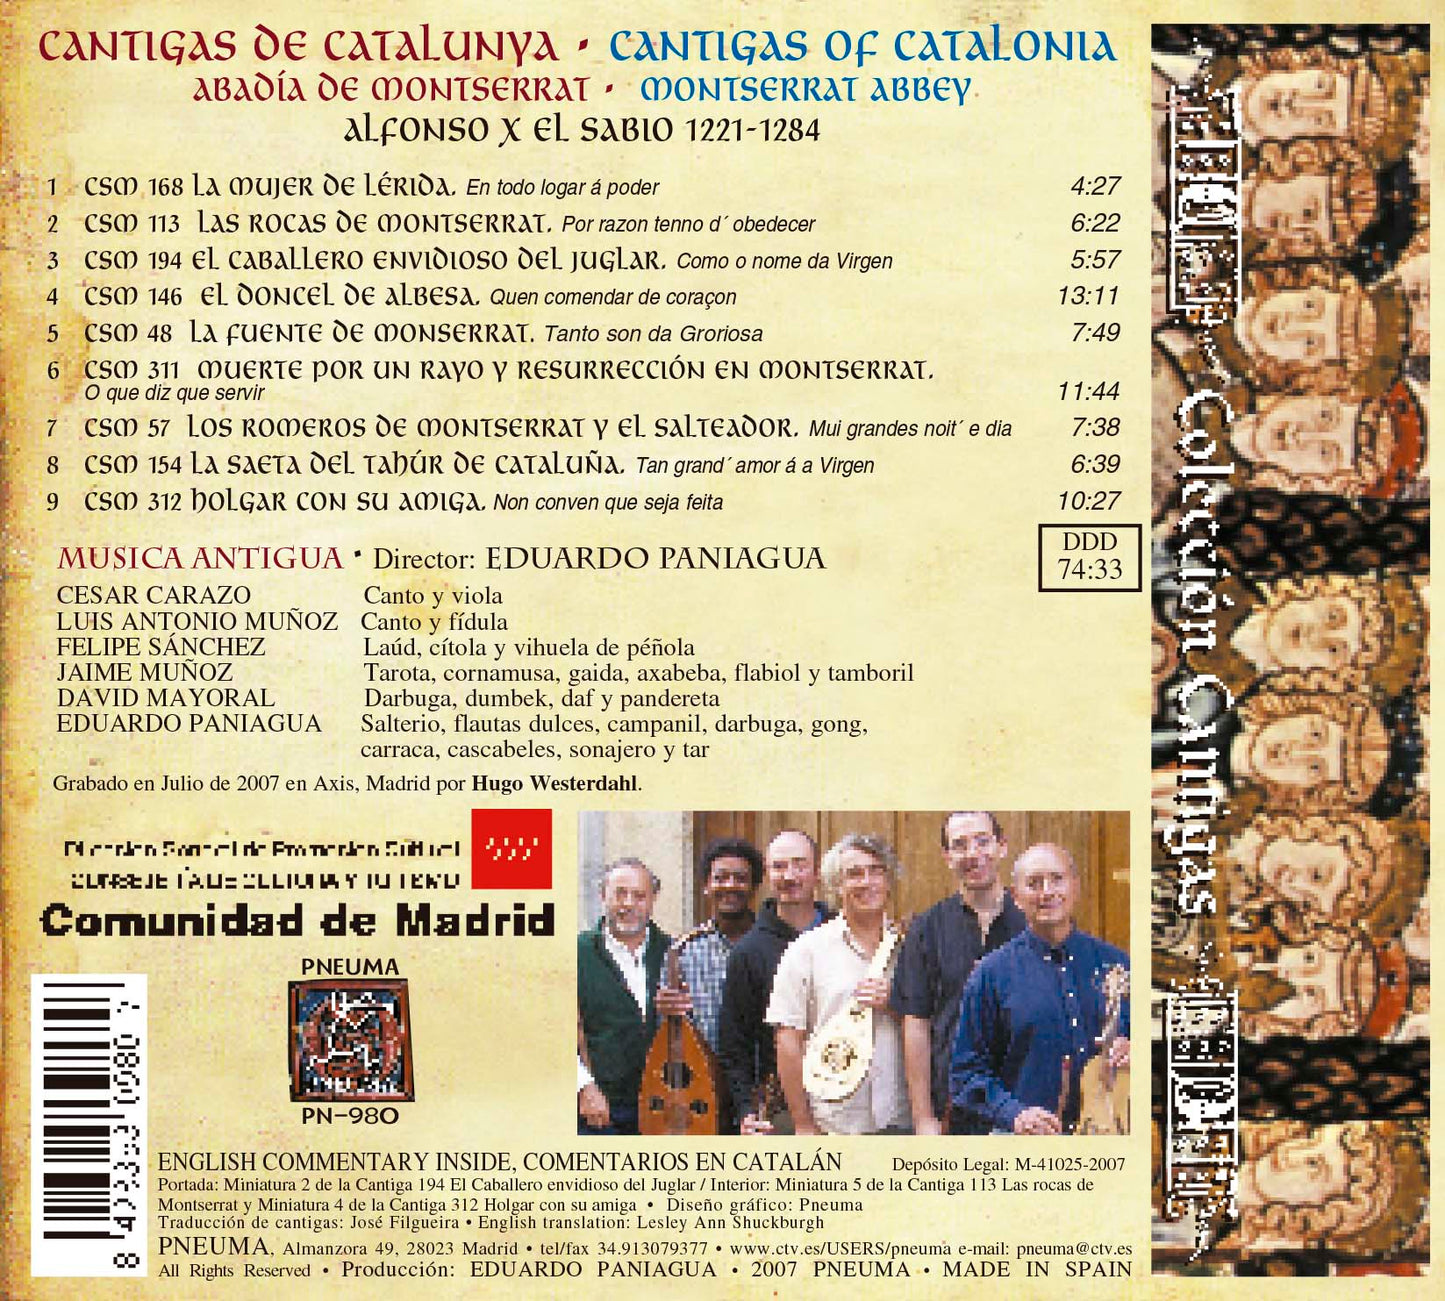 PN 980 CANTIGAS DE CATALUNYA. Abadía de Montserrat